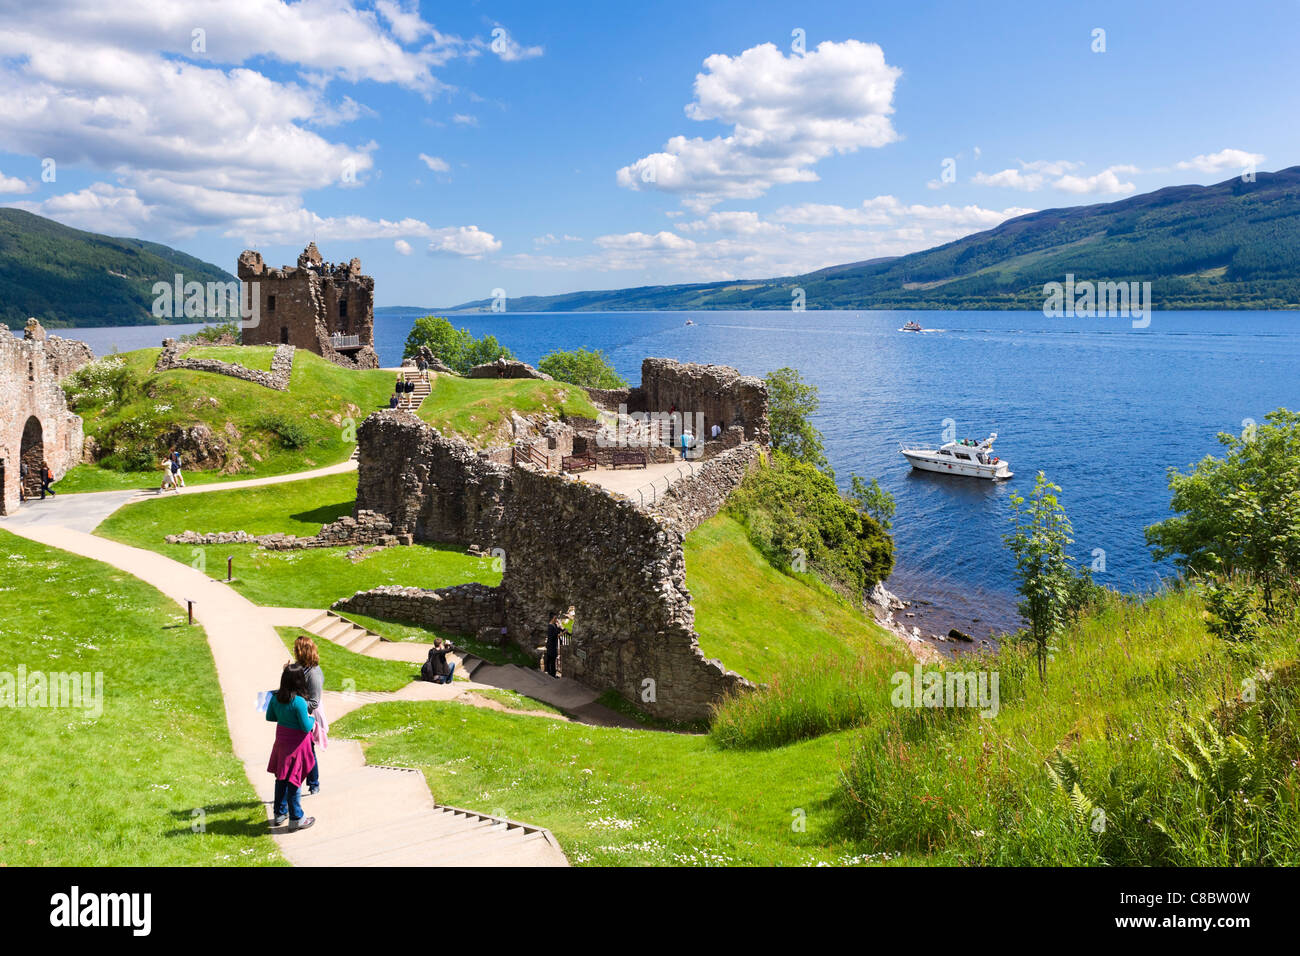 Les ruines d'Urquhart Castle sur la rive occidentale du Loch Ness (site de nombreuses observations de Nessie), Drumnadrochit, Highland, Scotland Banque D'Images